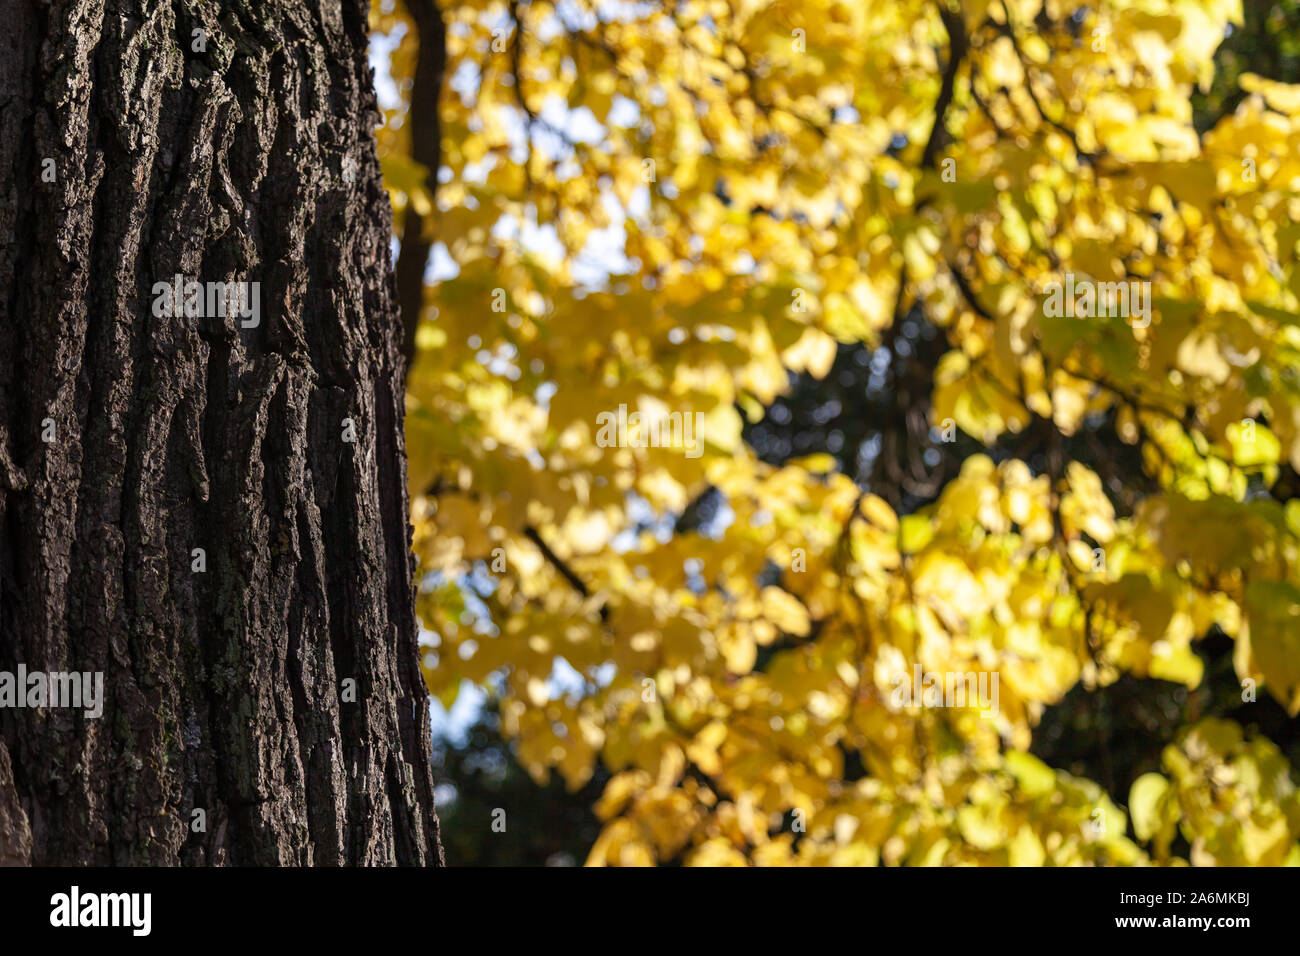 Nahaufnahme von einem Baum und seine Rinde gegen gelbe Blätter. Der Herbst ist angekommen und das Laub ist der Wechsel zu hell und virbrant Farben. Stockfoto